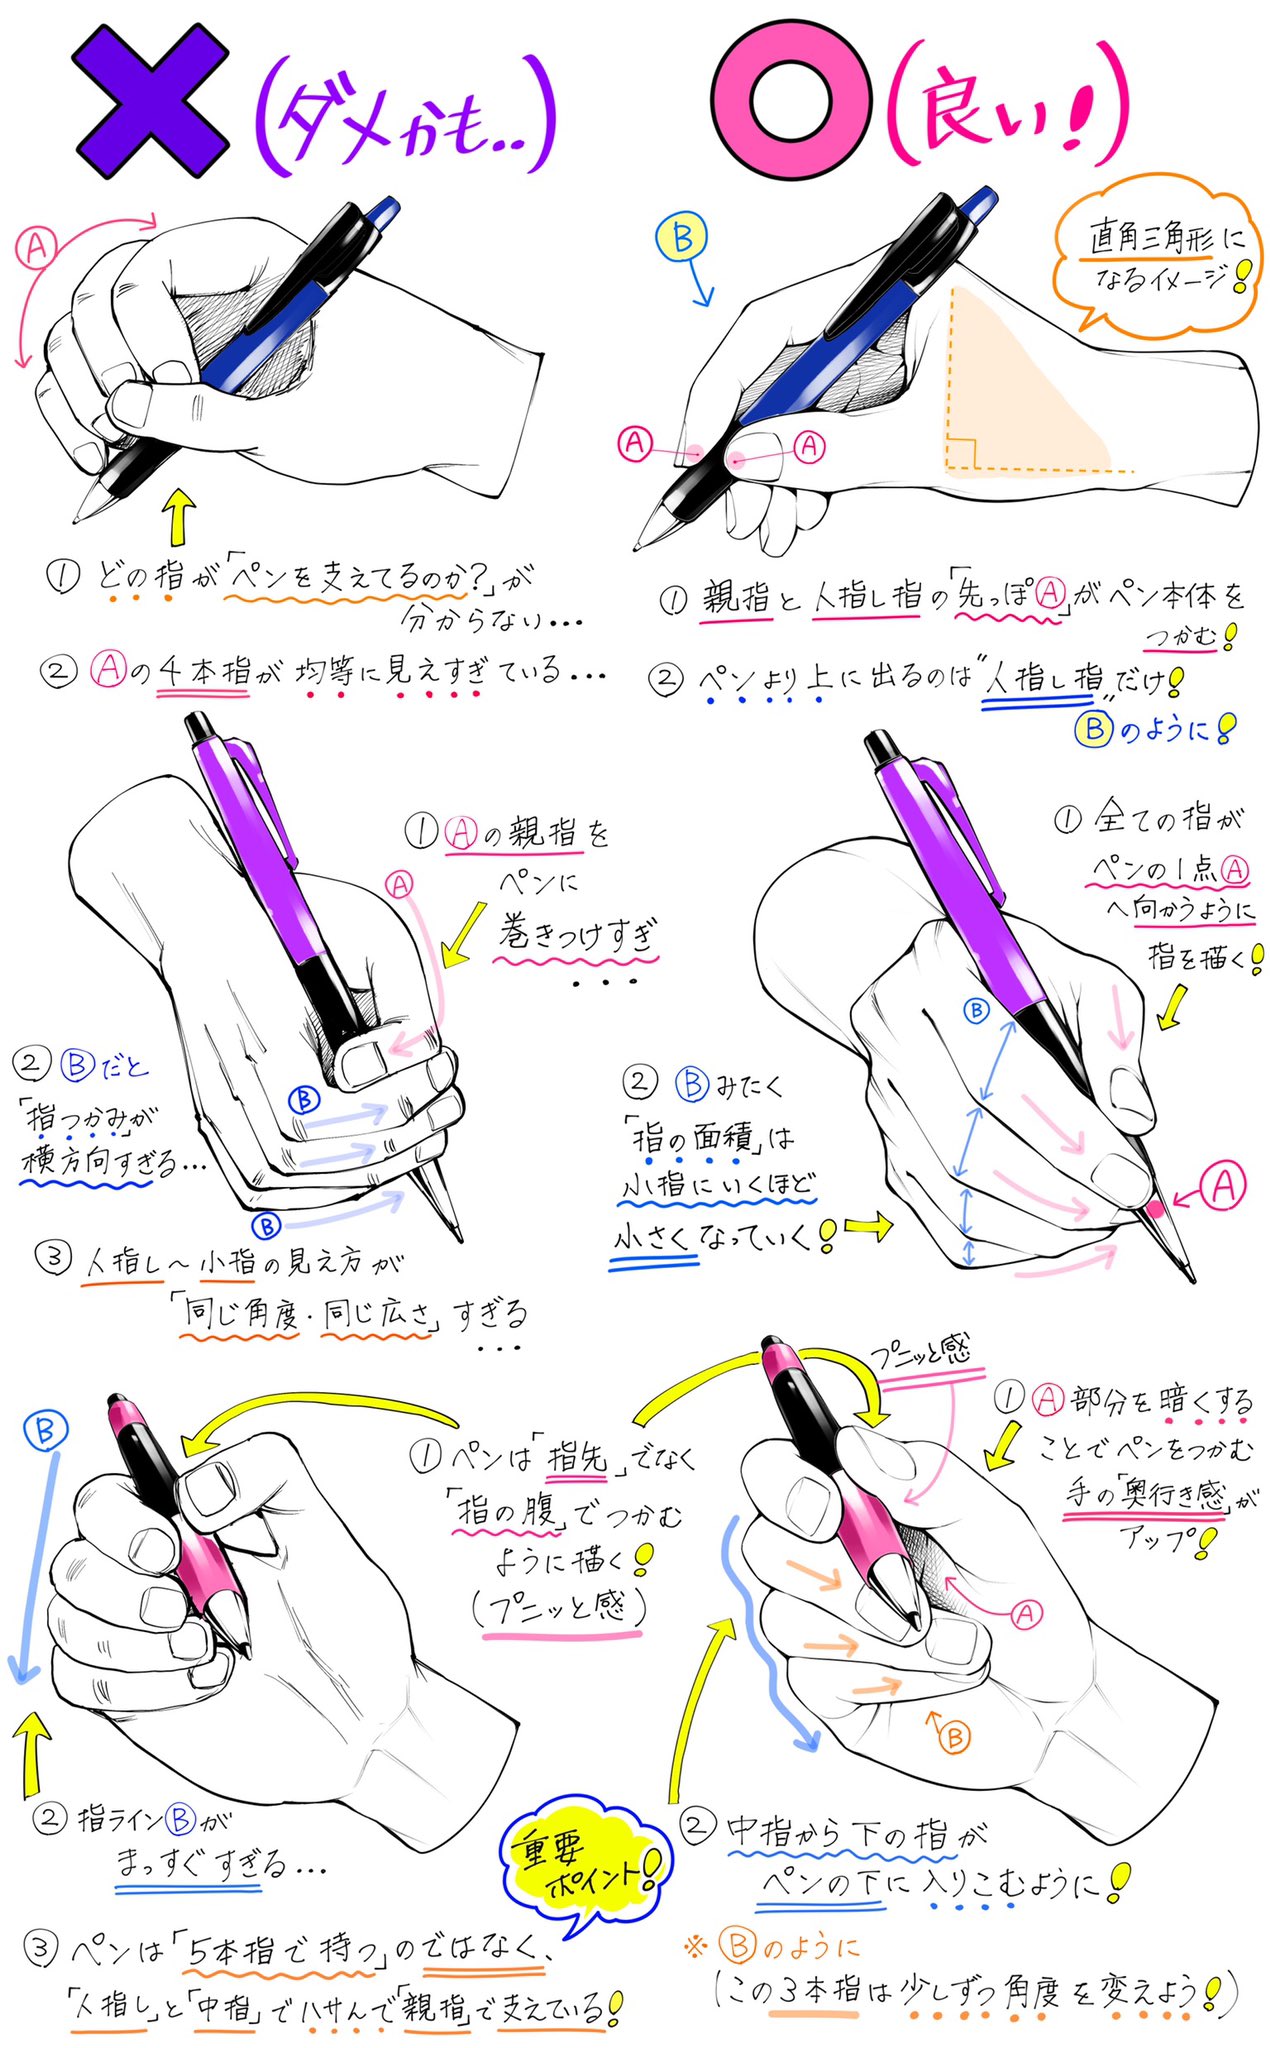 吉村拓也 イラスト講座 ペンを持つ手 の描き方 にぎるときの手や指 が上達する ダメなこと と 良いこと